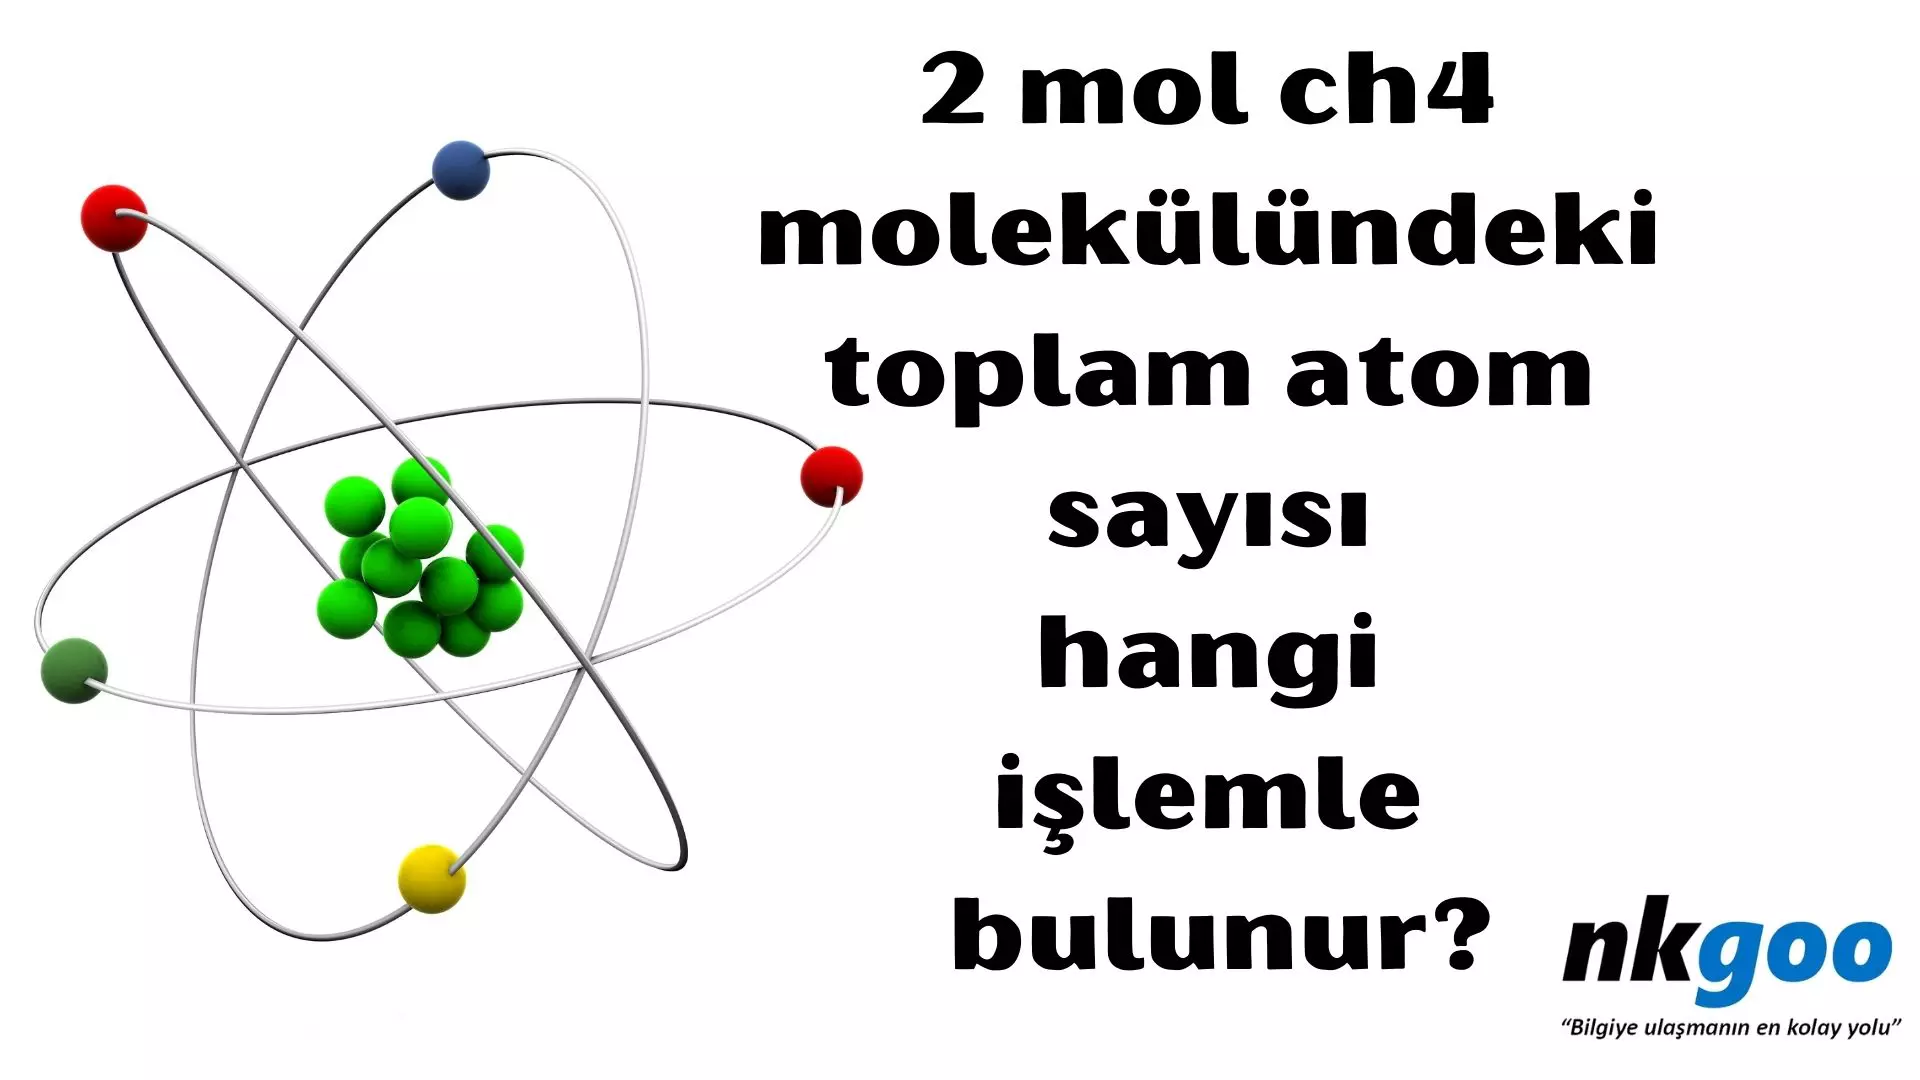 2 mol ch4 molekülündeki toplam atom sayısı hangi işlemle bulunur?